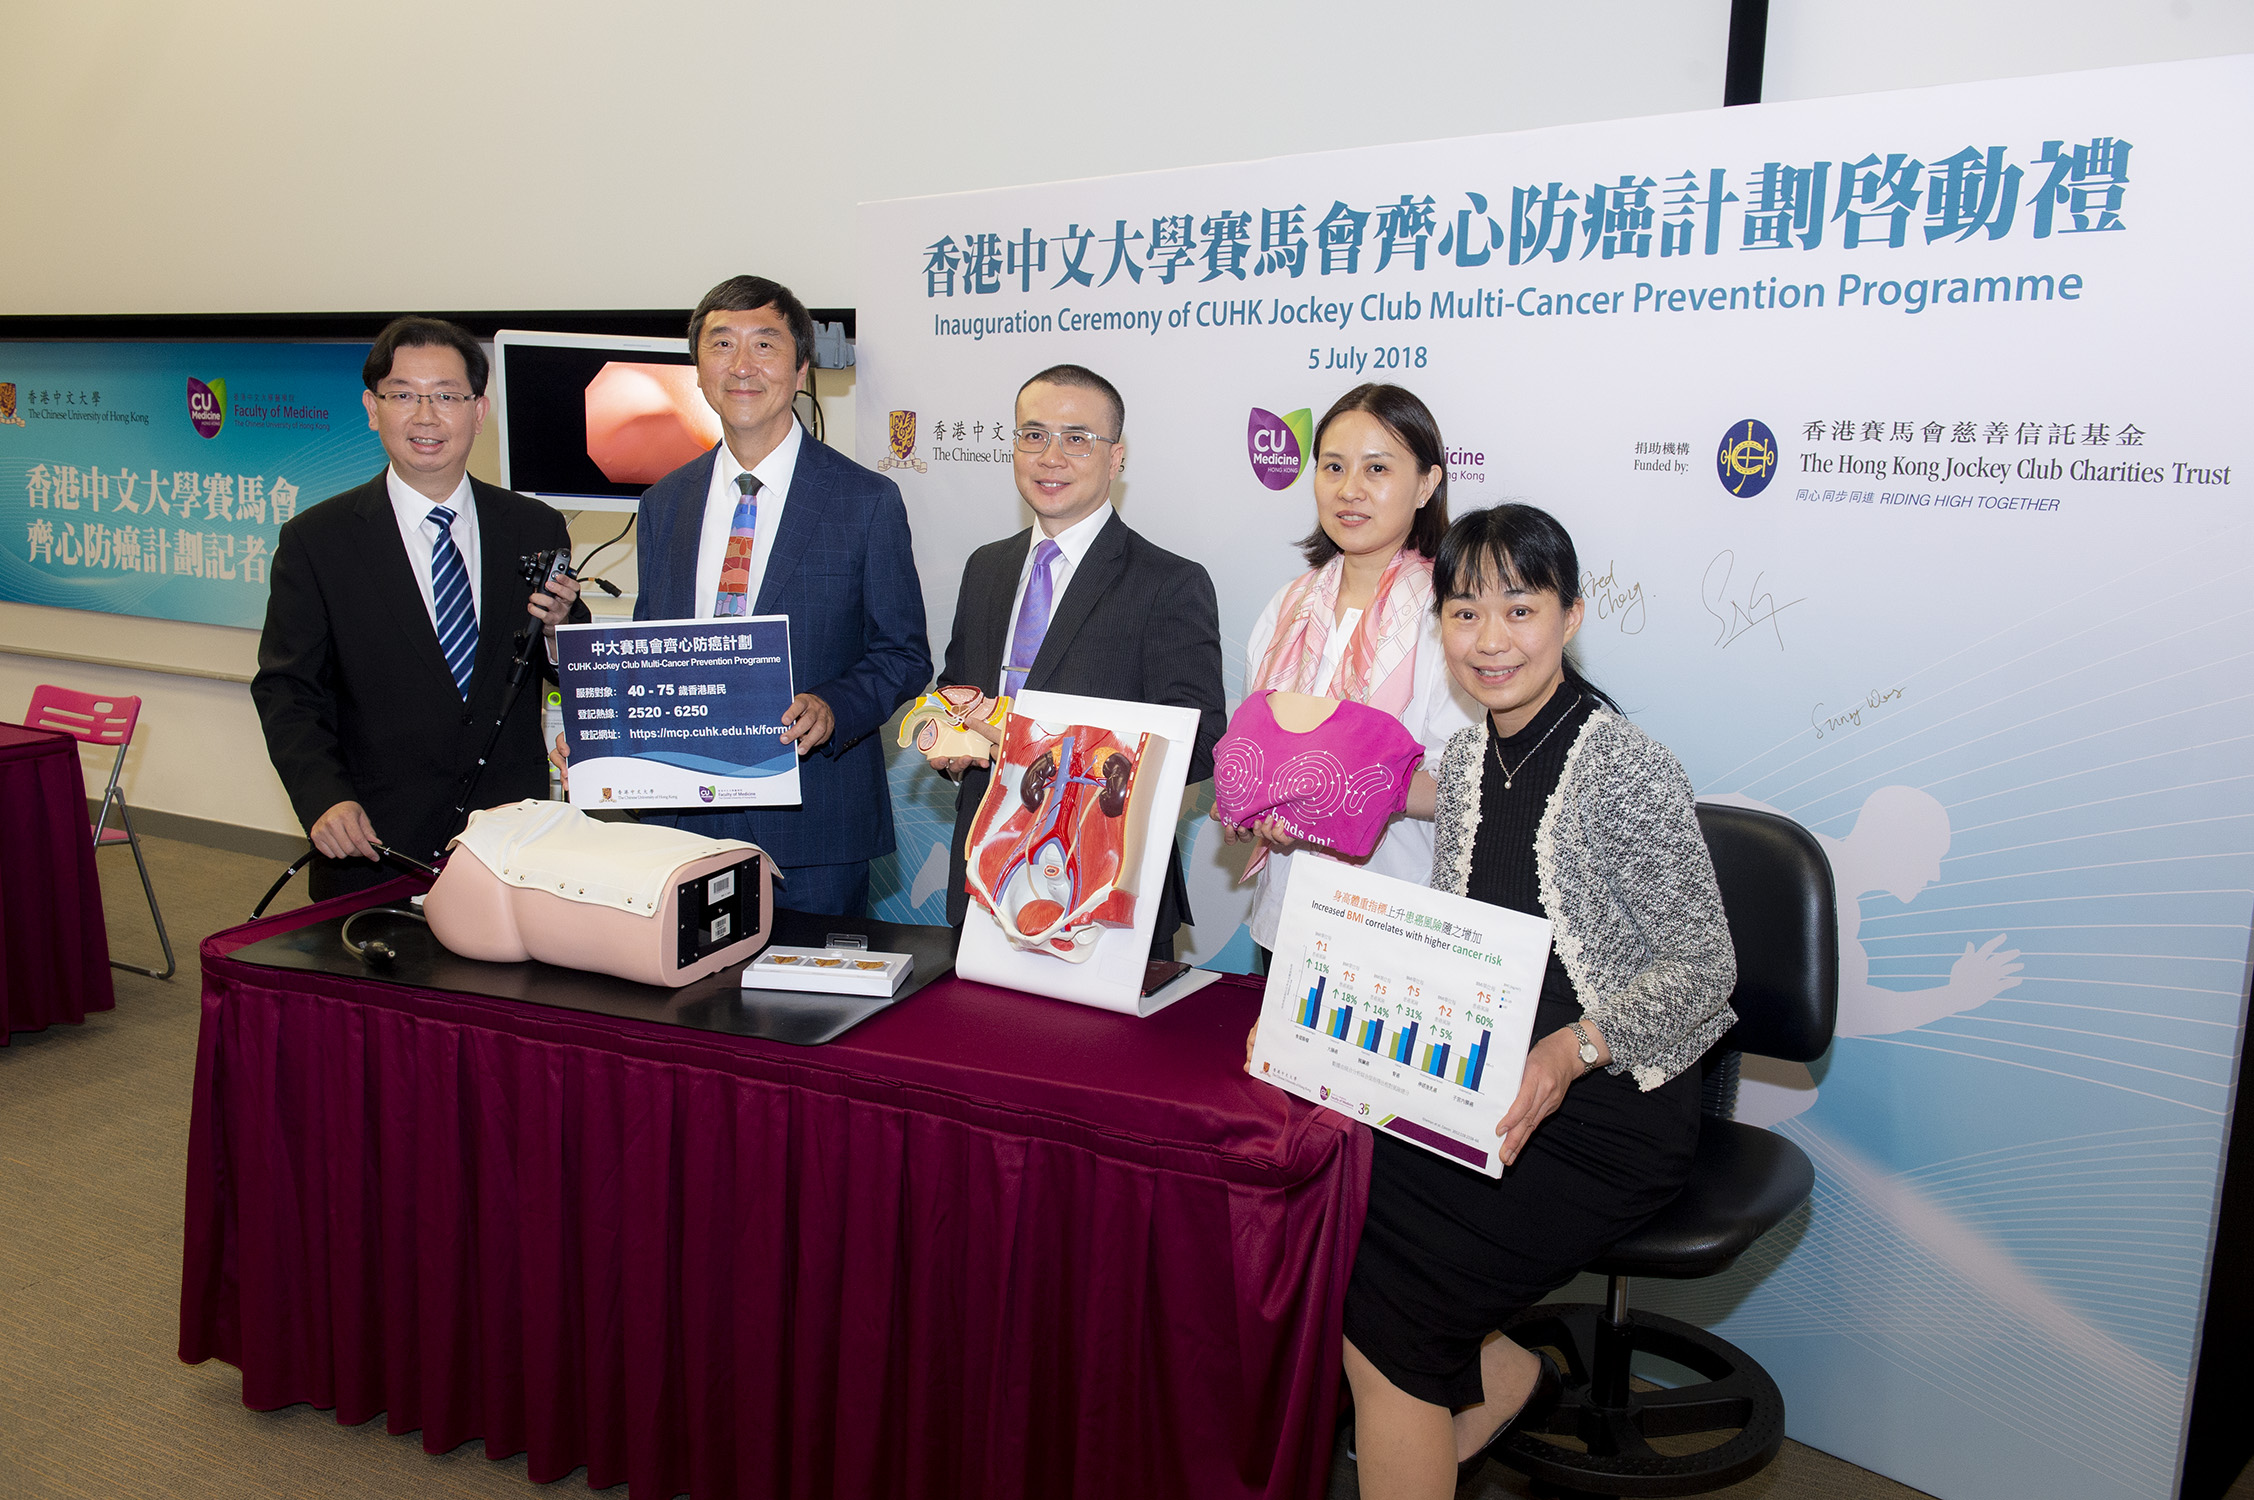  計劃將集中研究大腸癌、乳癌及前列腺癌三種癌症的免費篩查。現正招募一萬名年齡介乎40至75歲的香港居民參與計劃。